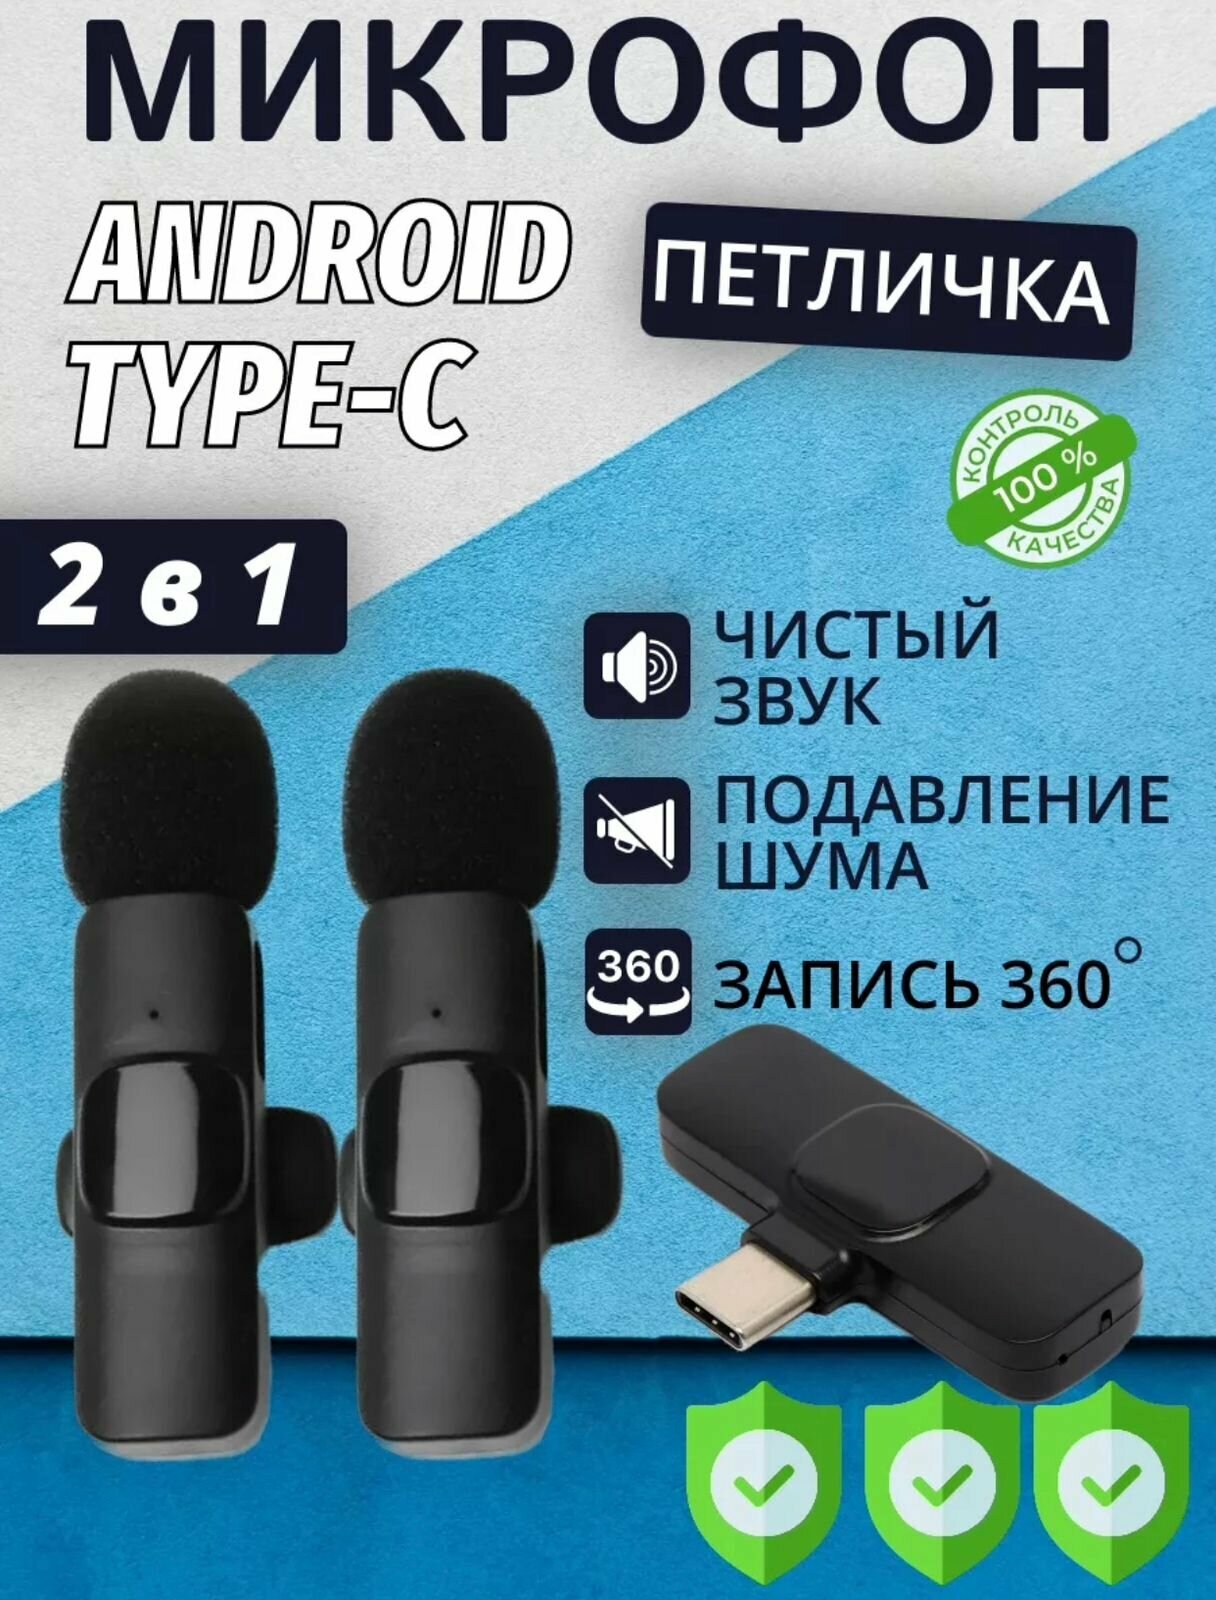 Комплект из 2 беспроводных петличных микрофонов K9C duo с шумоподавлением для телефона, планшета, ноутбука, камеры / штекер Type-C / черные